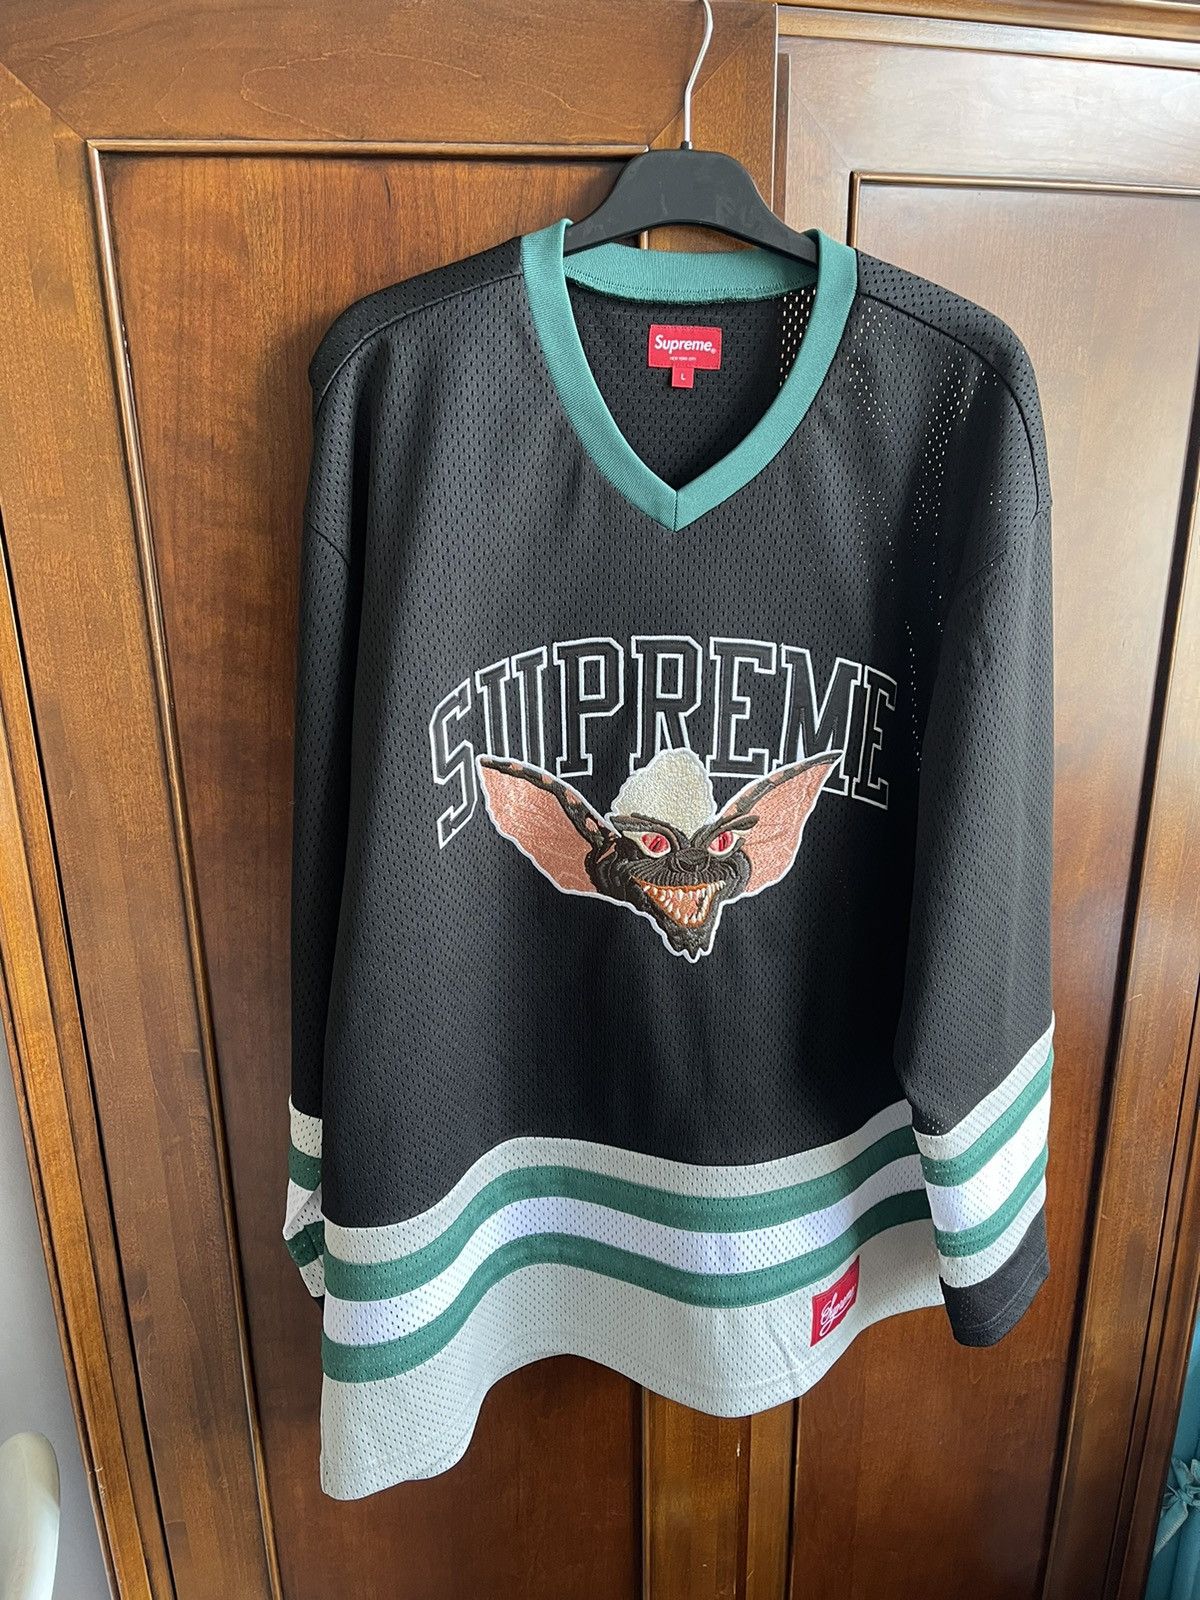 Supreme Supreme Gremlins hockey jersey (black) (L) | Grailed